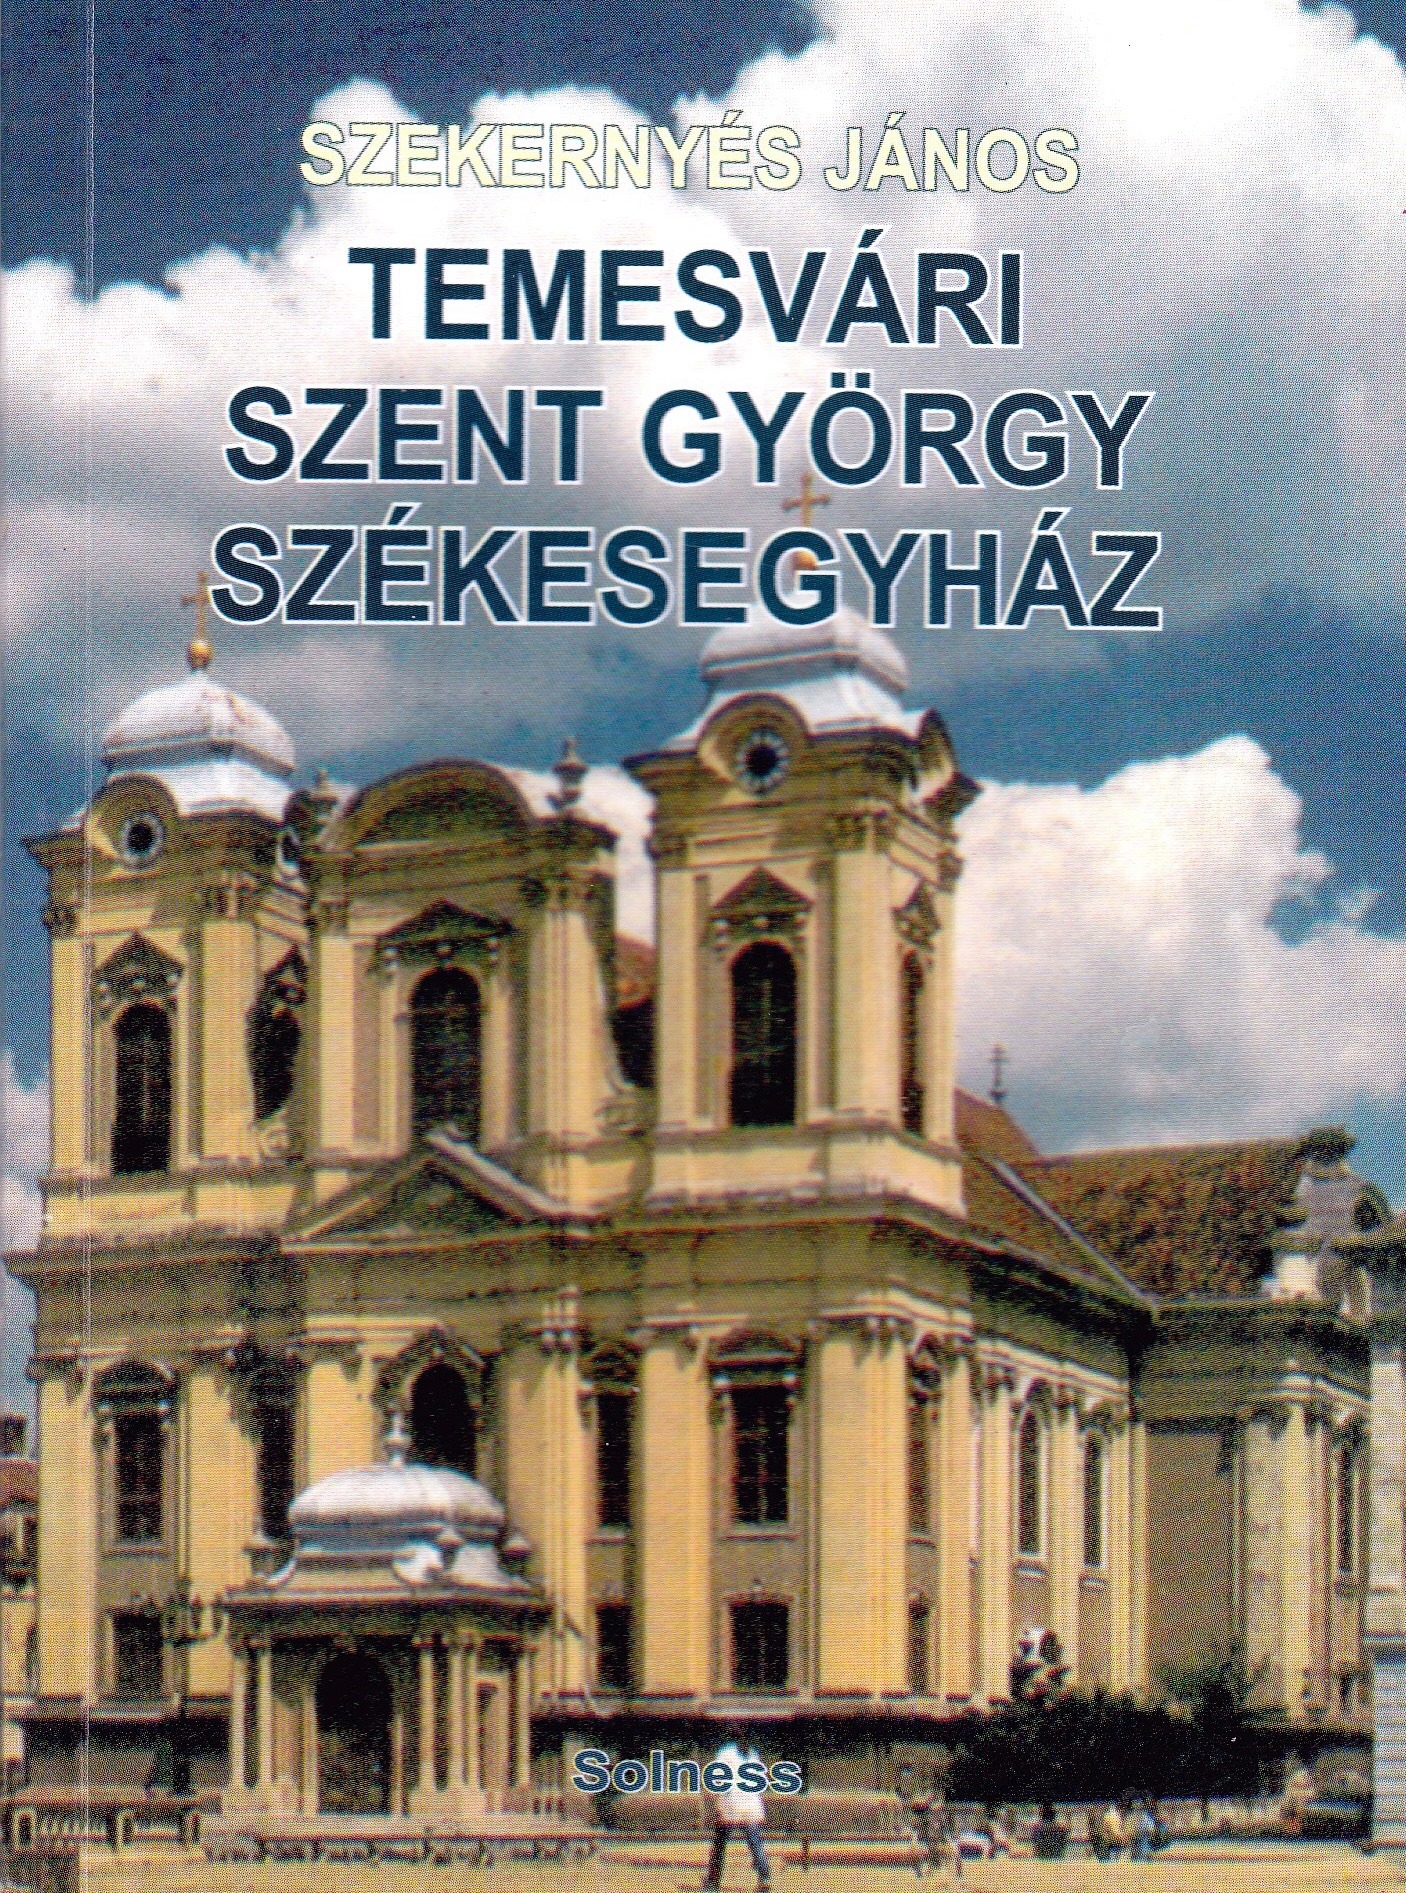 Temesvári Szent György Székesegyház - Temesváros